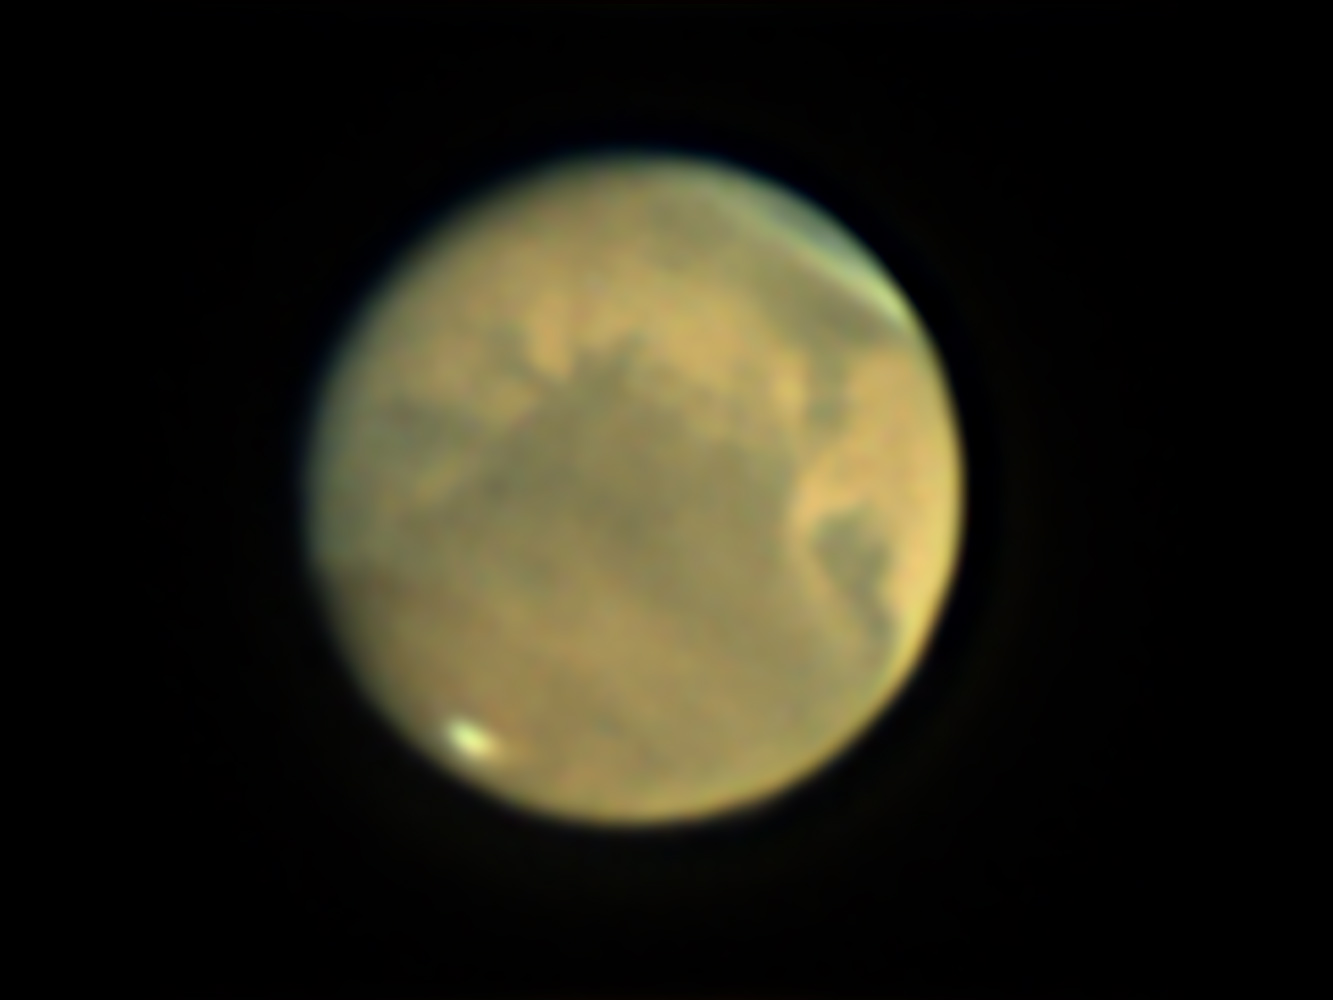 Mars on Nov 6, 2020 at 5:07 UT